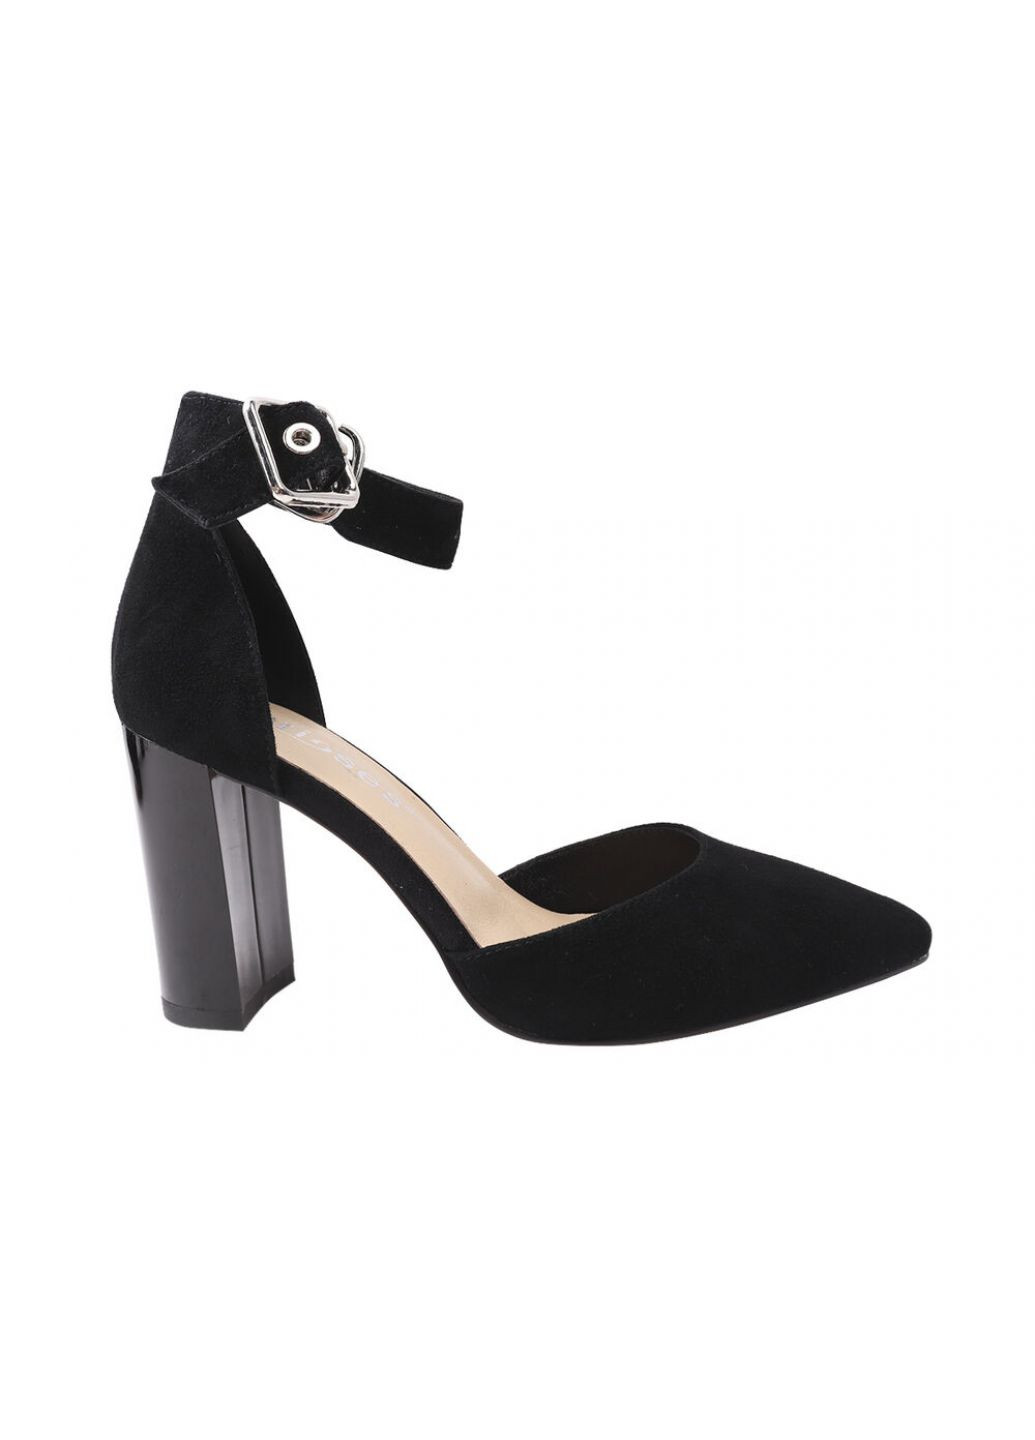 Туфлі жіночі з натуральної замші, на великому каблуці, із закритою п'ятою, колір чорний, Erisses 917-21/22lt (257675510)